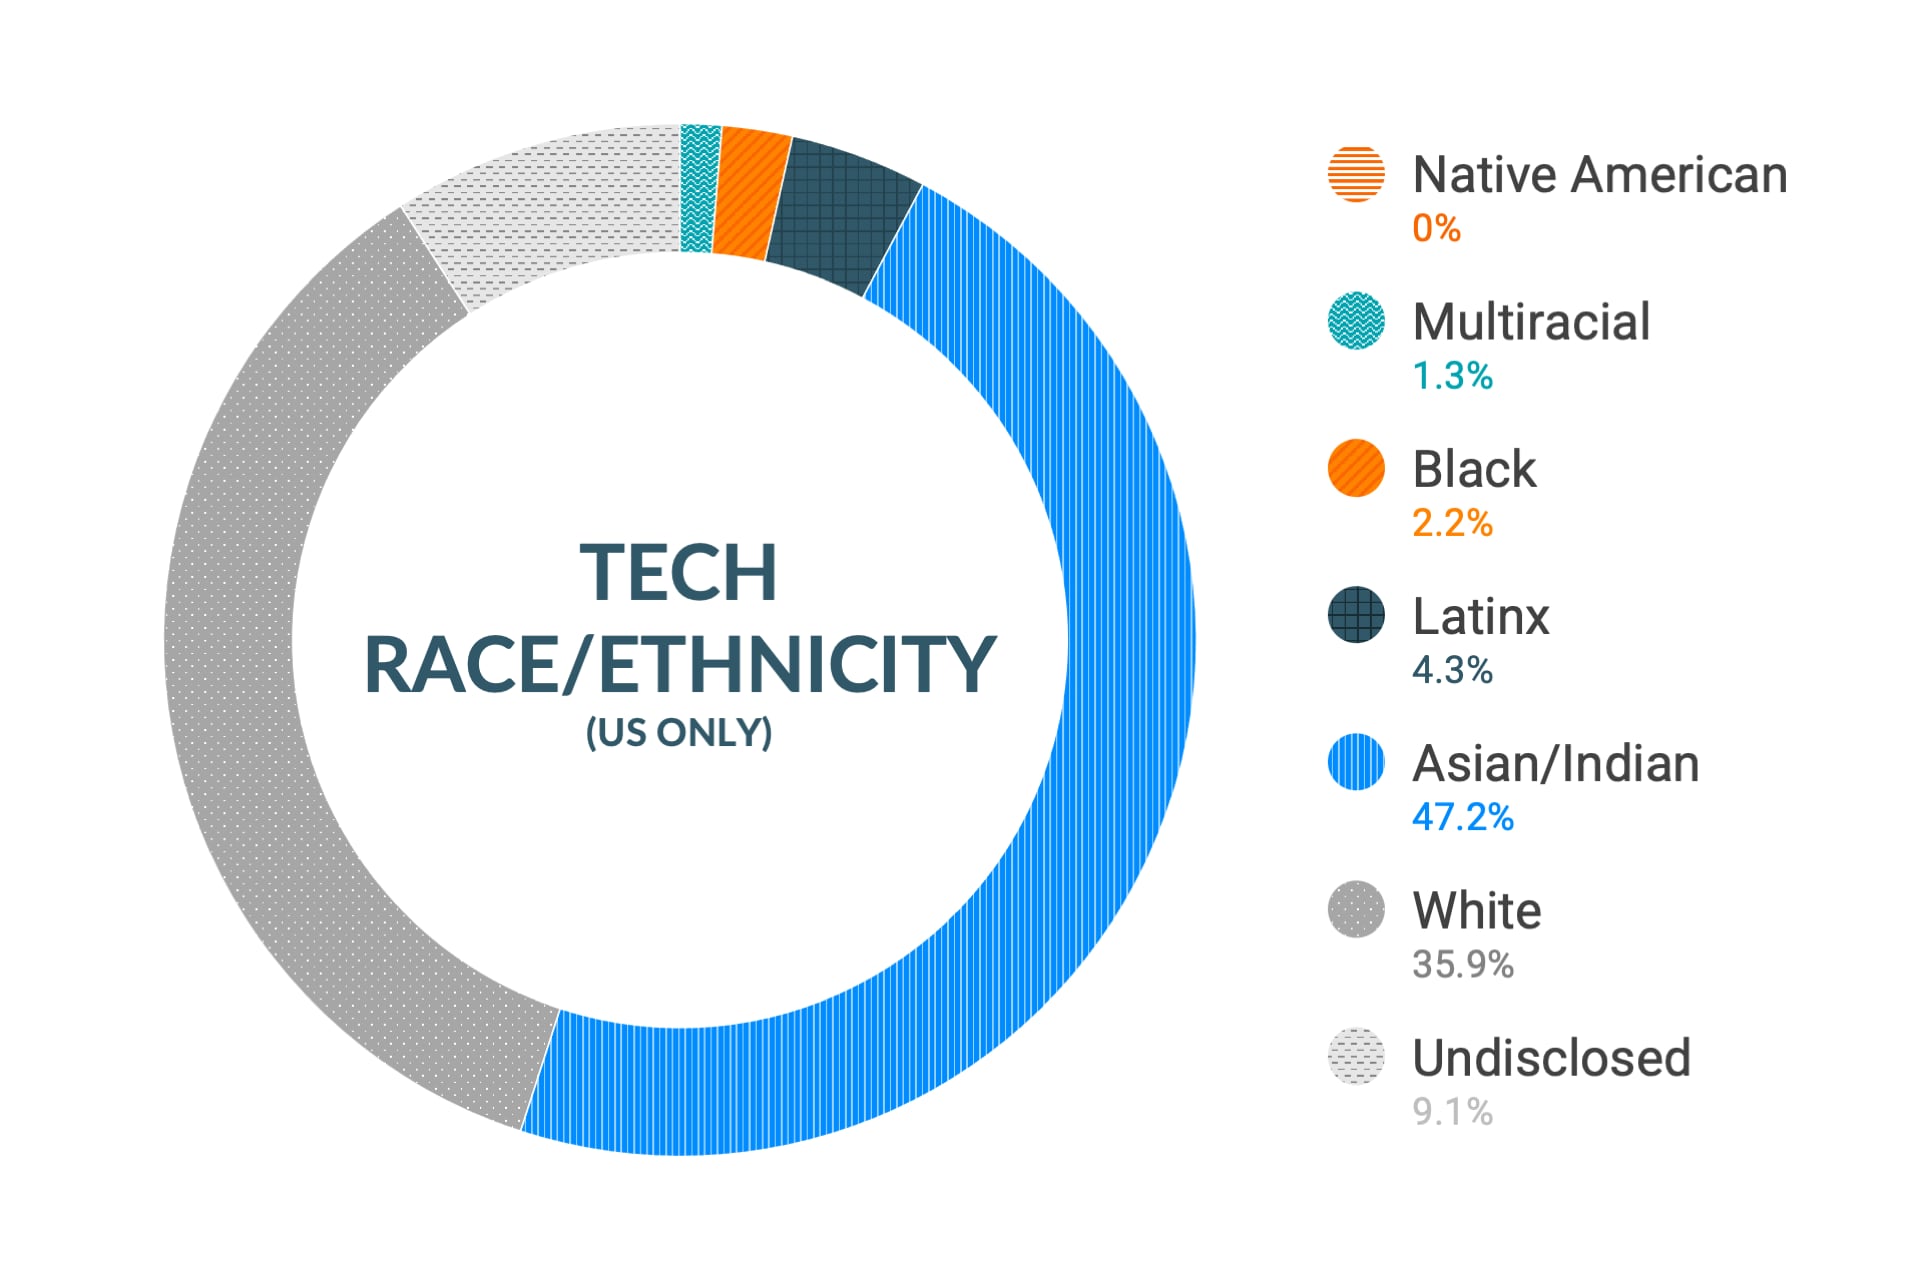 Dane firmy Cloudera dotyczące różnorodności i inkluzywności w kontekście rasy i pochodzenia etnicznego na stanowiskach technicznych i inżynieryjnych w Stanach Zjednoczonych: rdzenni Amerykanie 0%, osoby wielorasowe 1,8%, Afroamerykanie 2,0%, Latynosi 3,6%, Azjaci i Hindusi 46,3%, biali 36,2%, nie ujawniono 10,1%